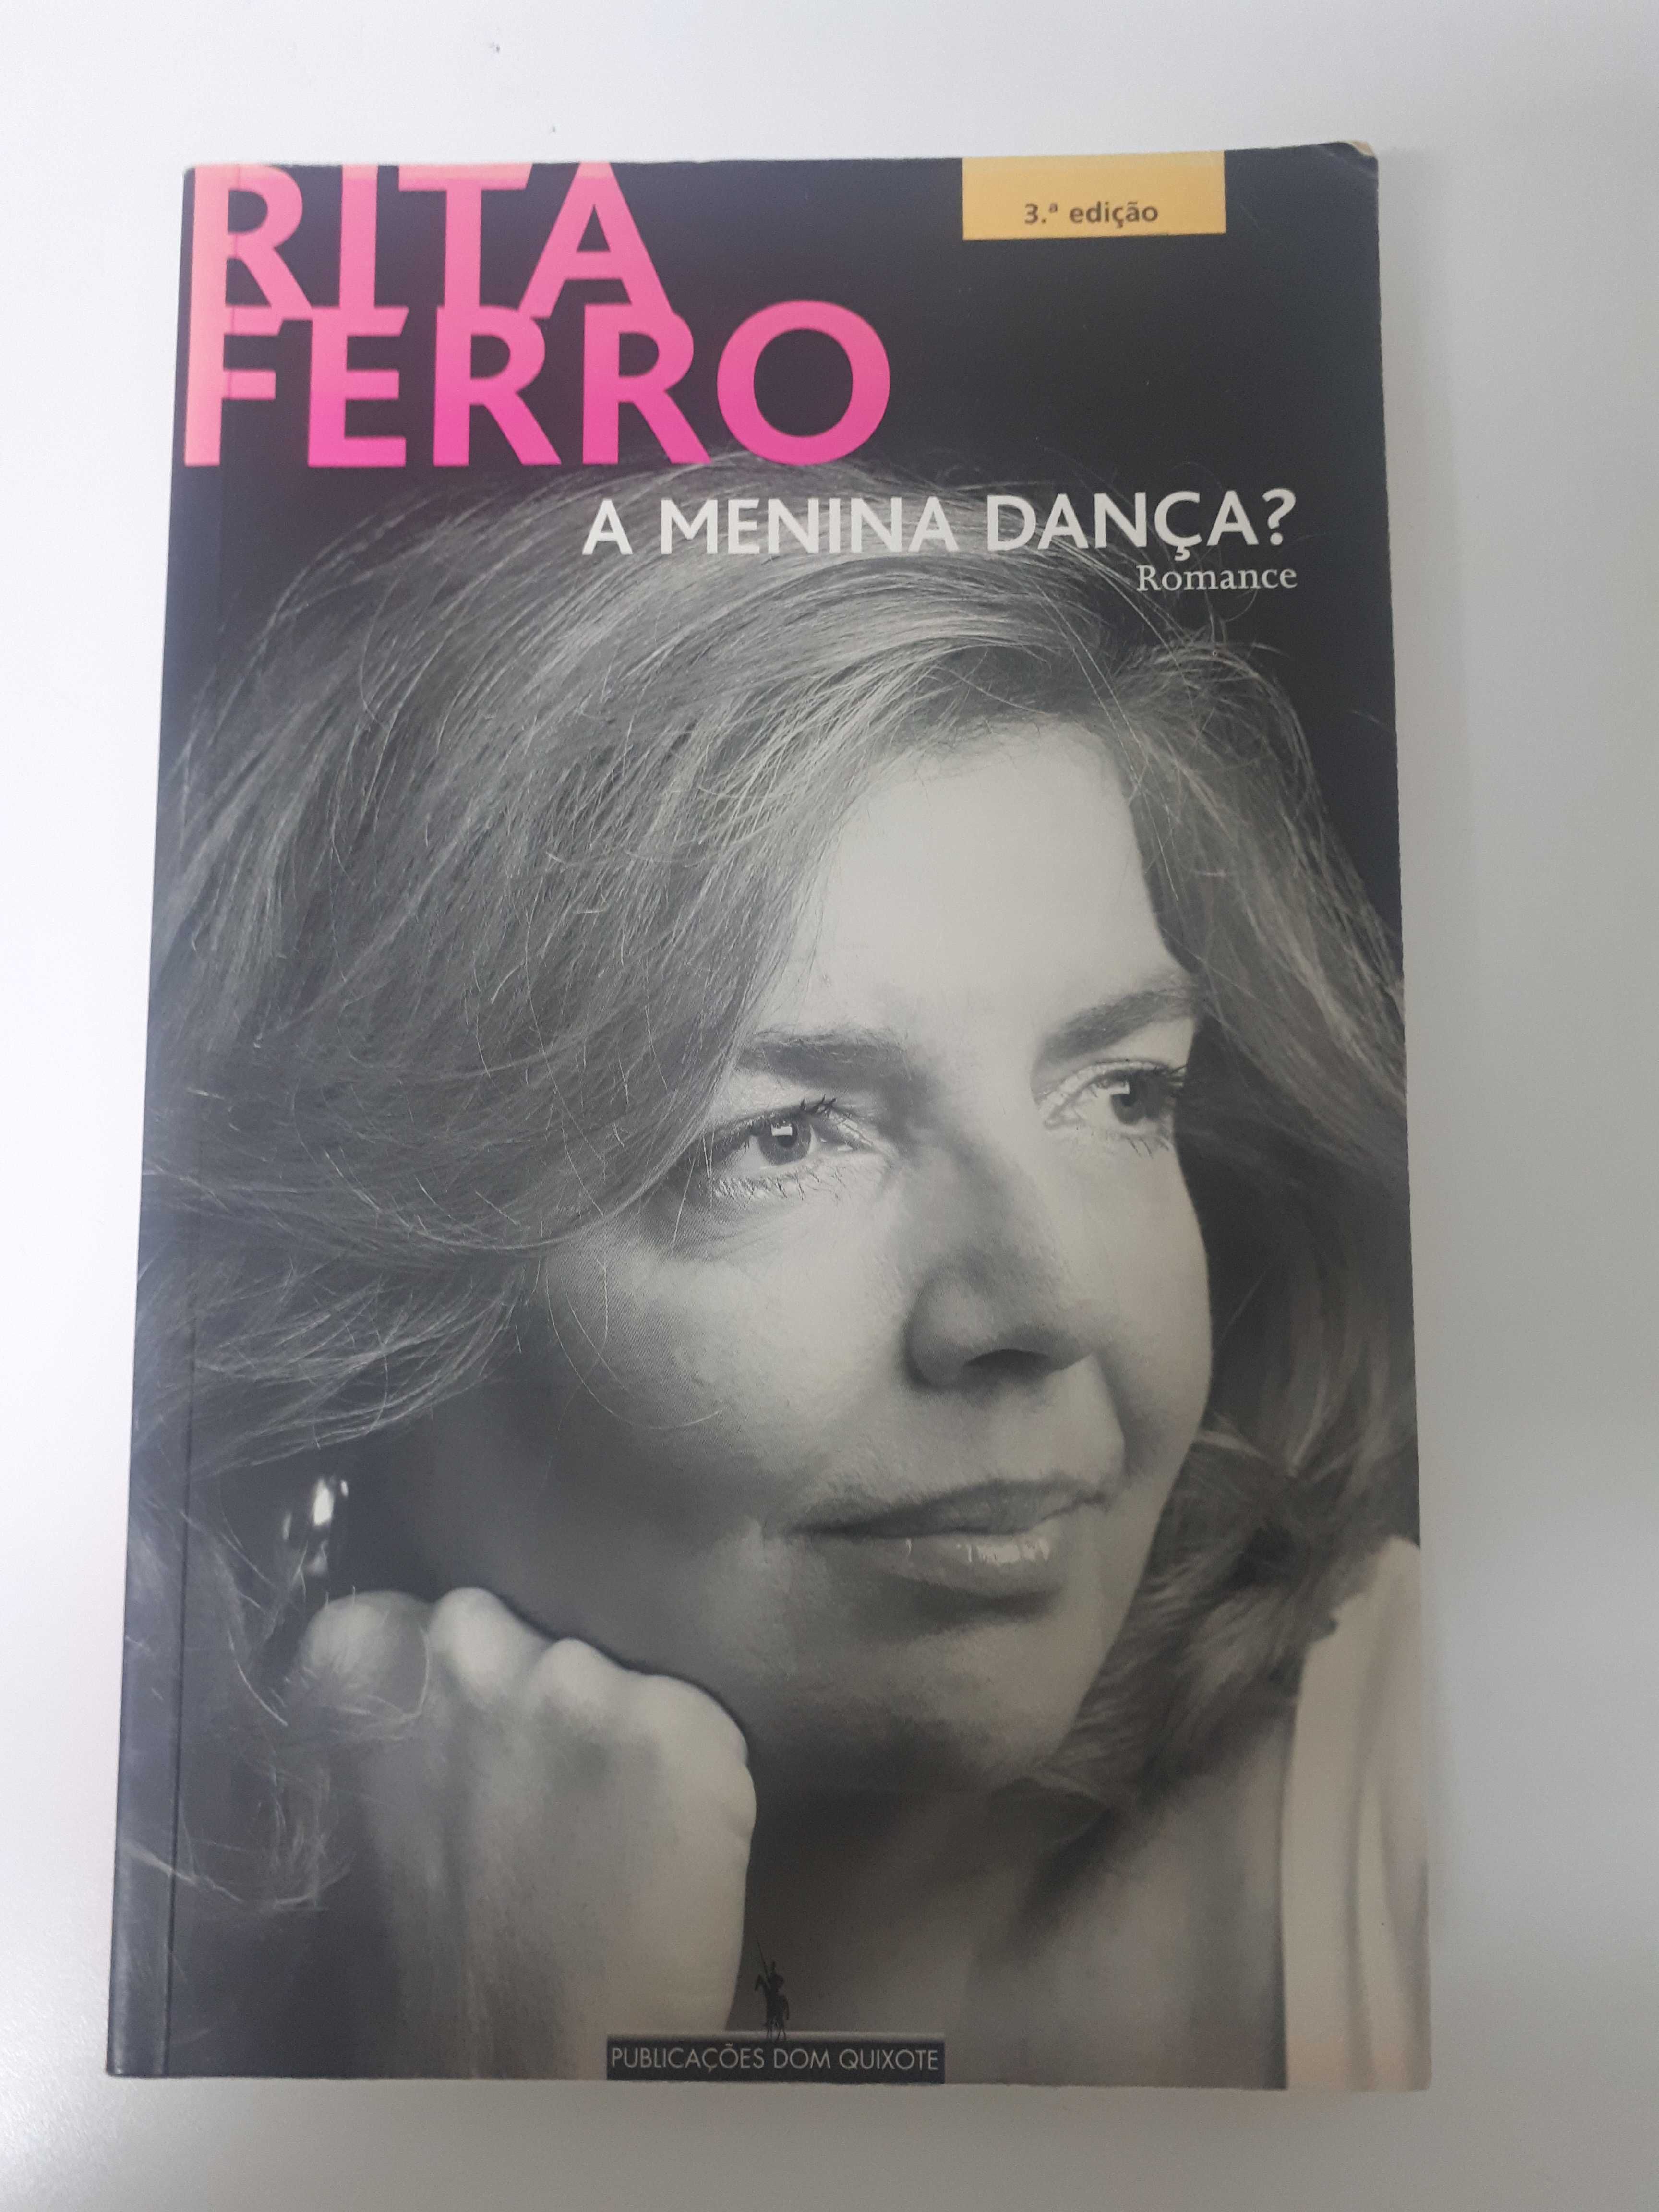 Rita Ferro - A menina dança?